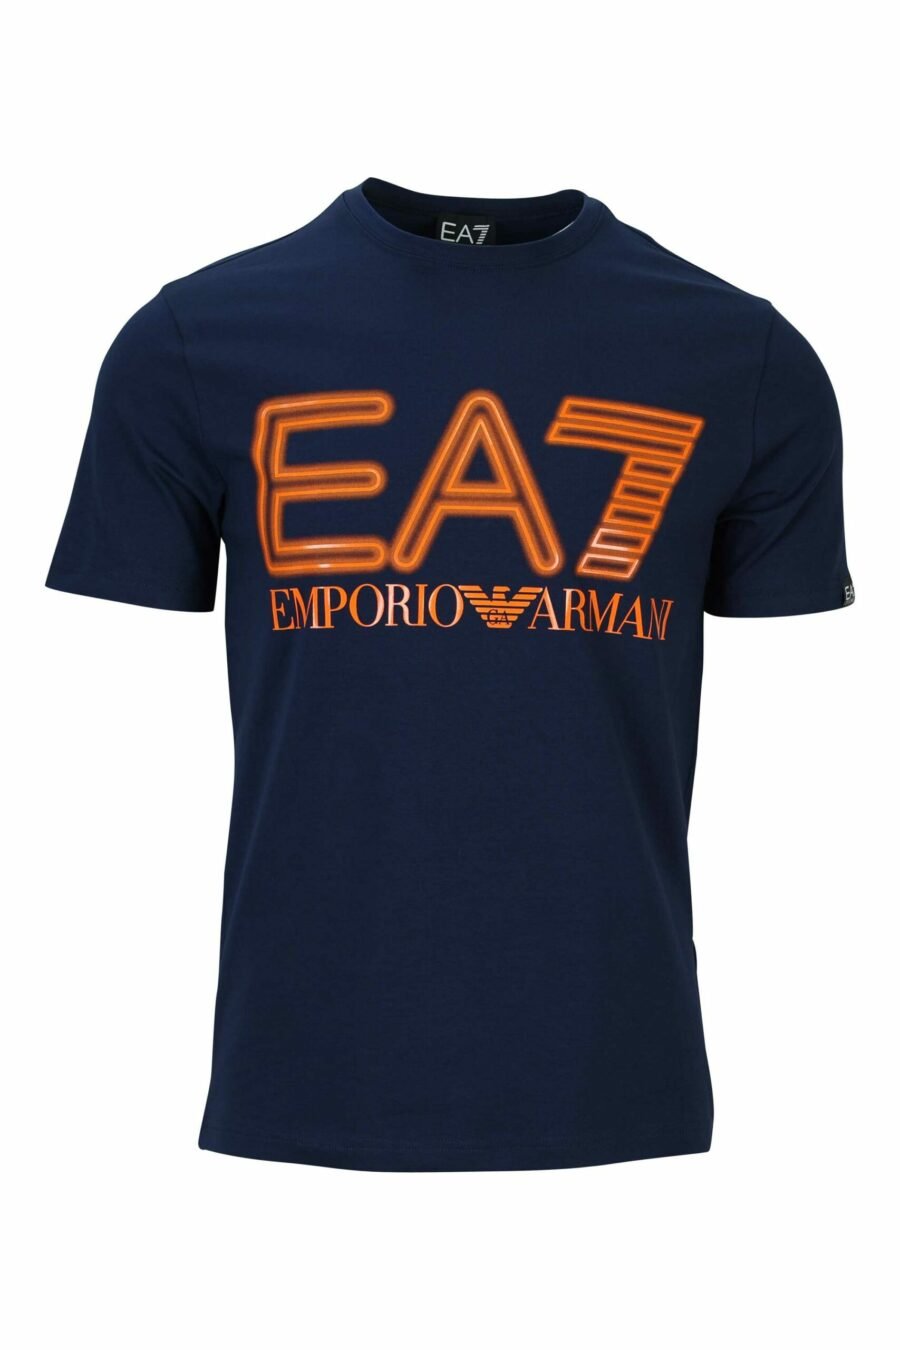 T-shirt azul escura com maxilogo "lux identity" em laranja néon - 8058947491445 à escala